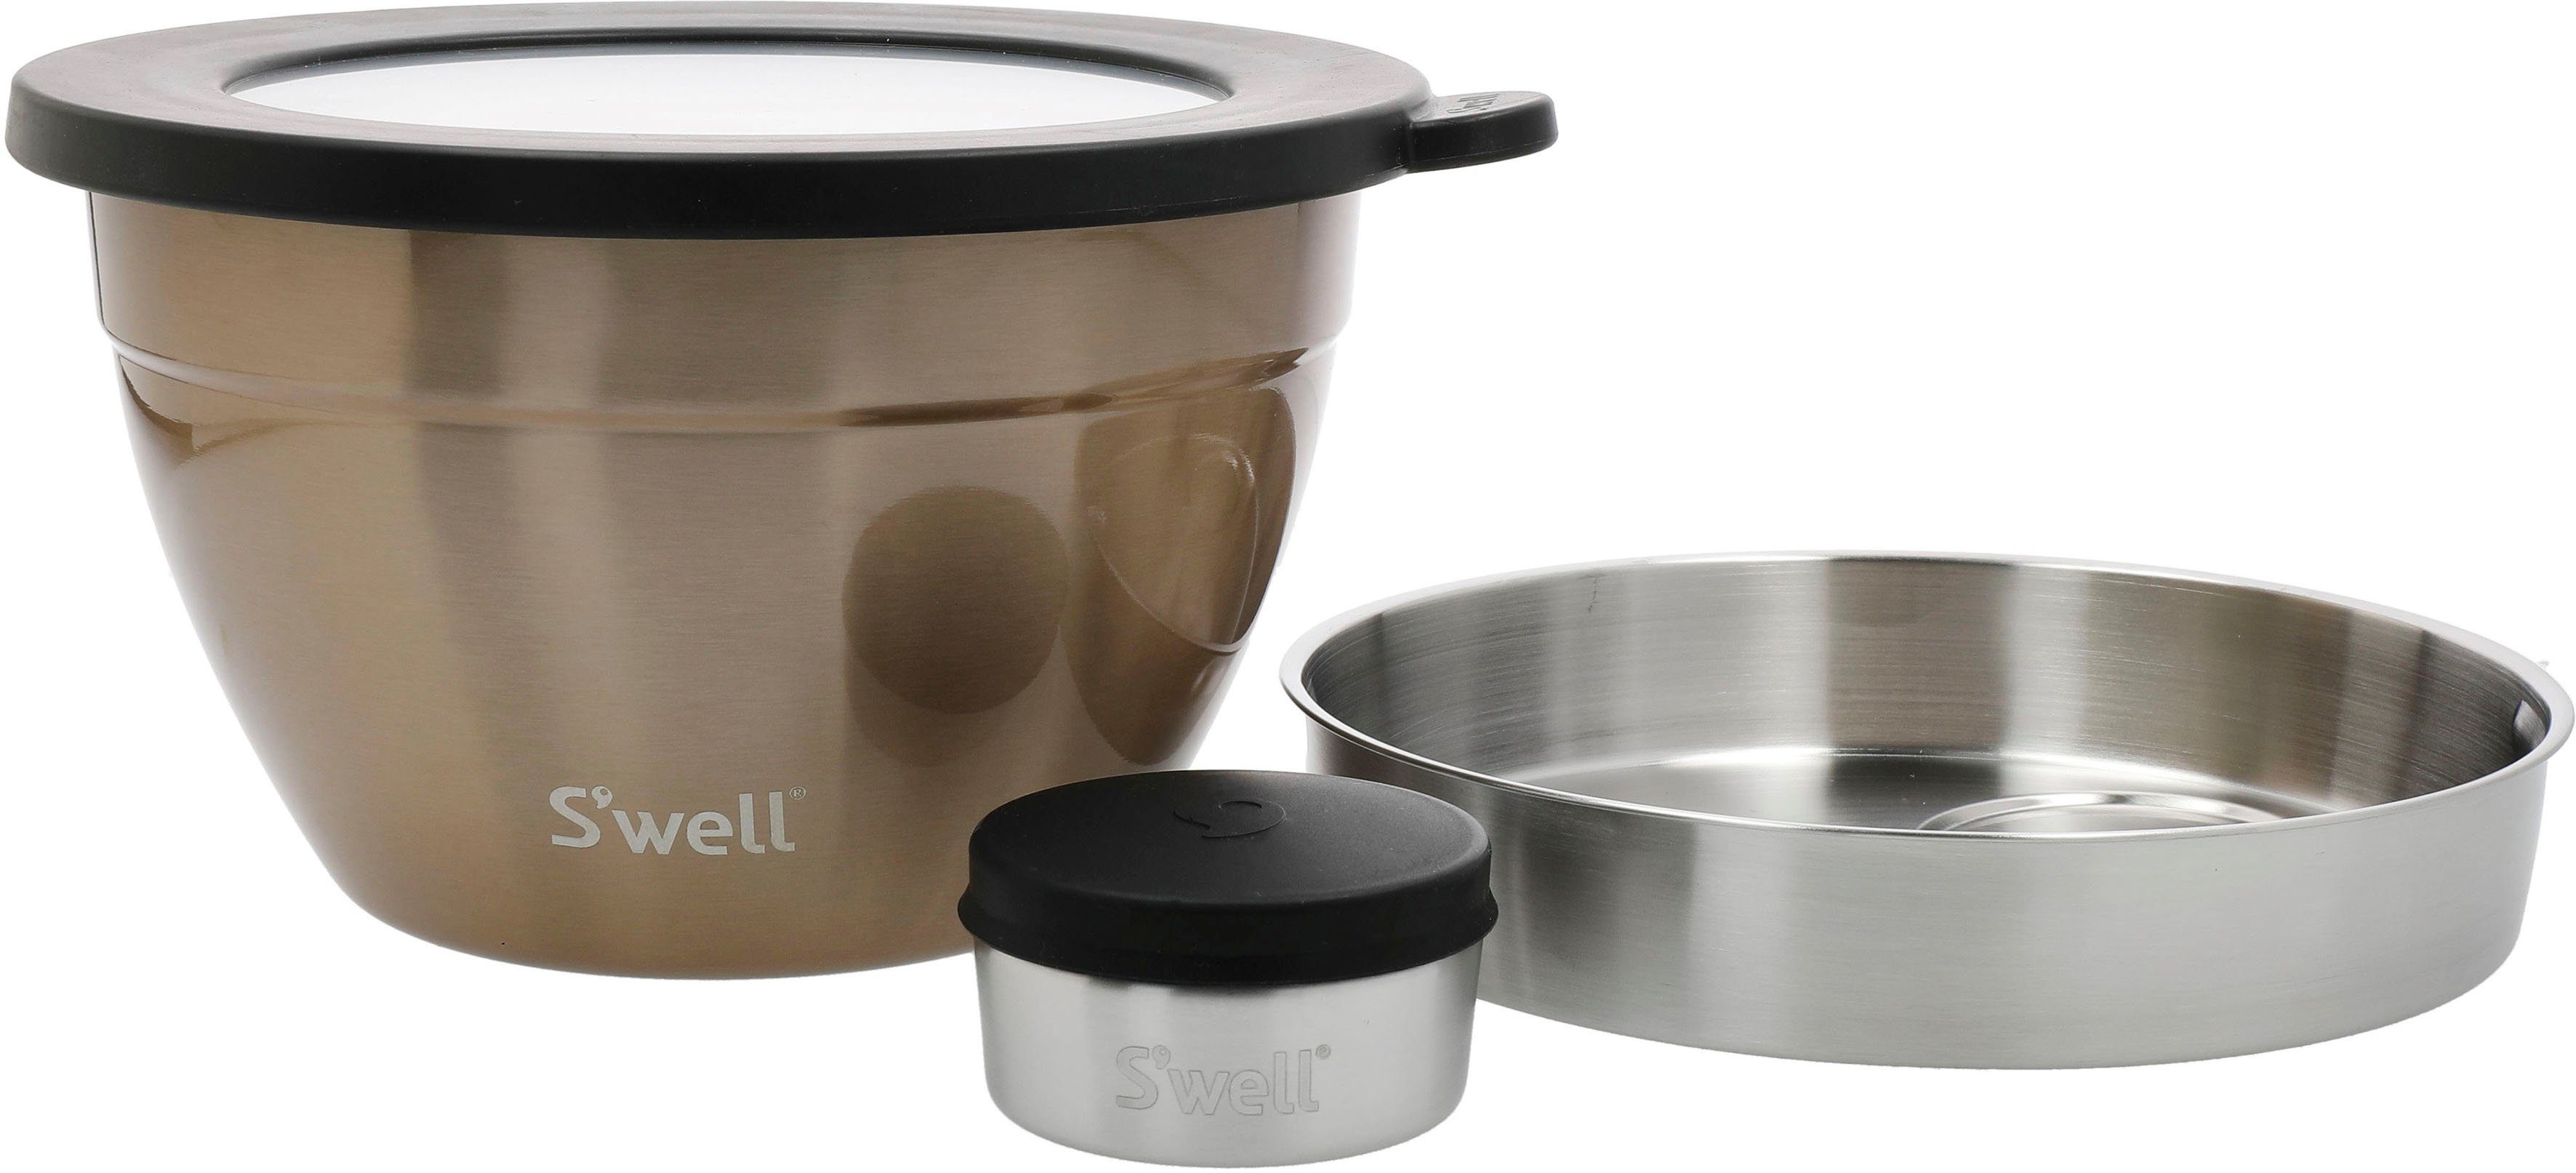 S'well Salatschüssel S'well Calacatta Gold Salad Bowl Kit, 1.9L, Edelstahl, (3-tlg), Therma-S'well®-Technologie mit vakuumisolierten Außenschale Pyrite